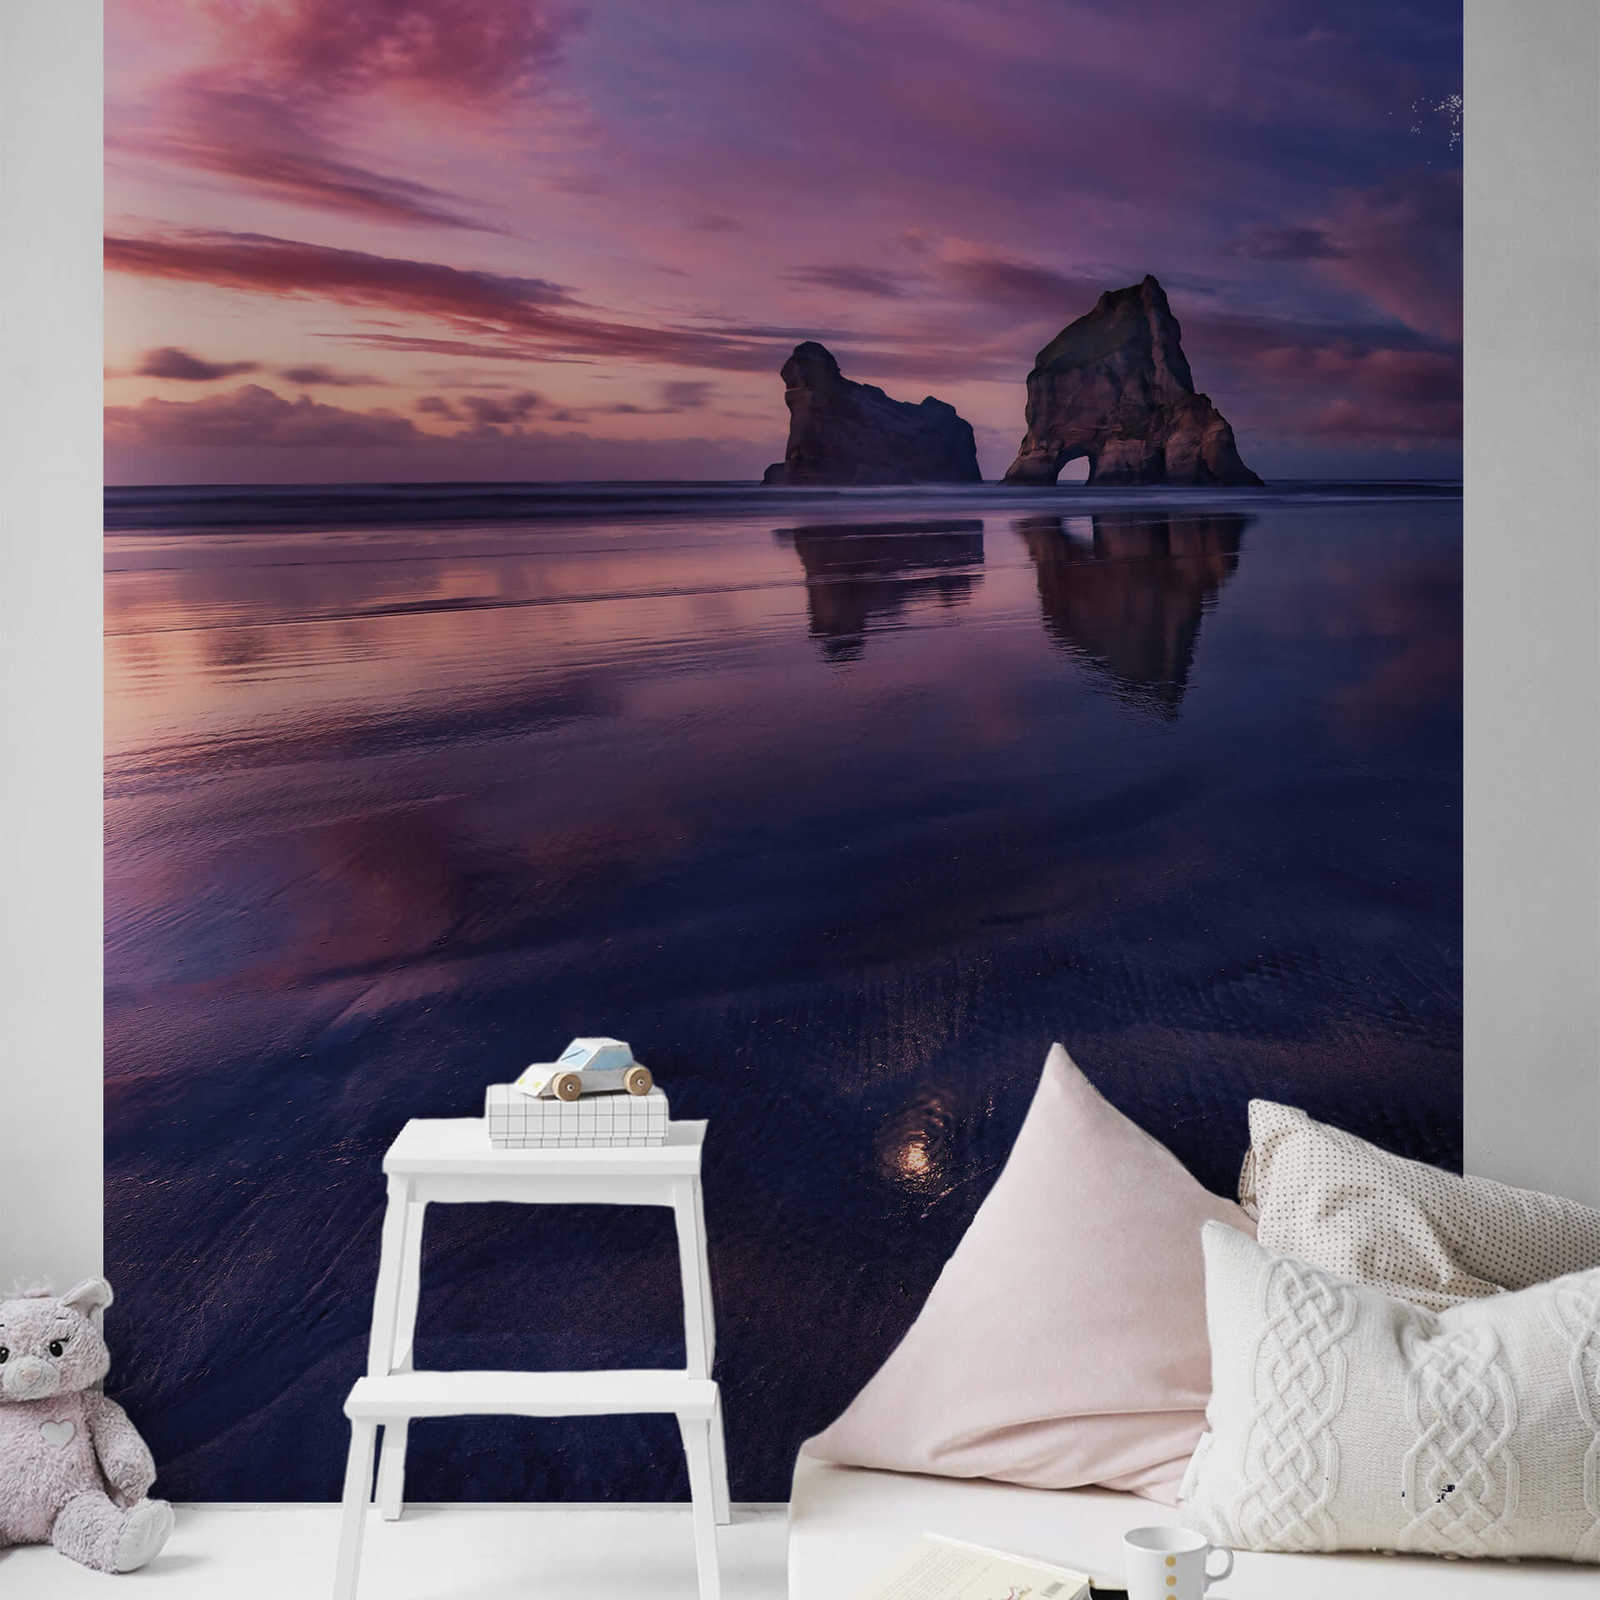             Photo wallpaper landscape beach and sea - purple, blue
        